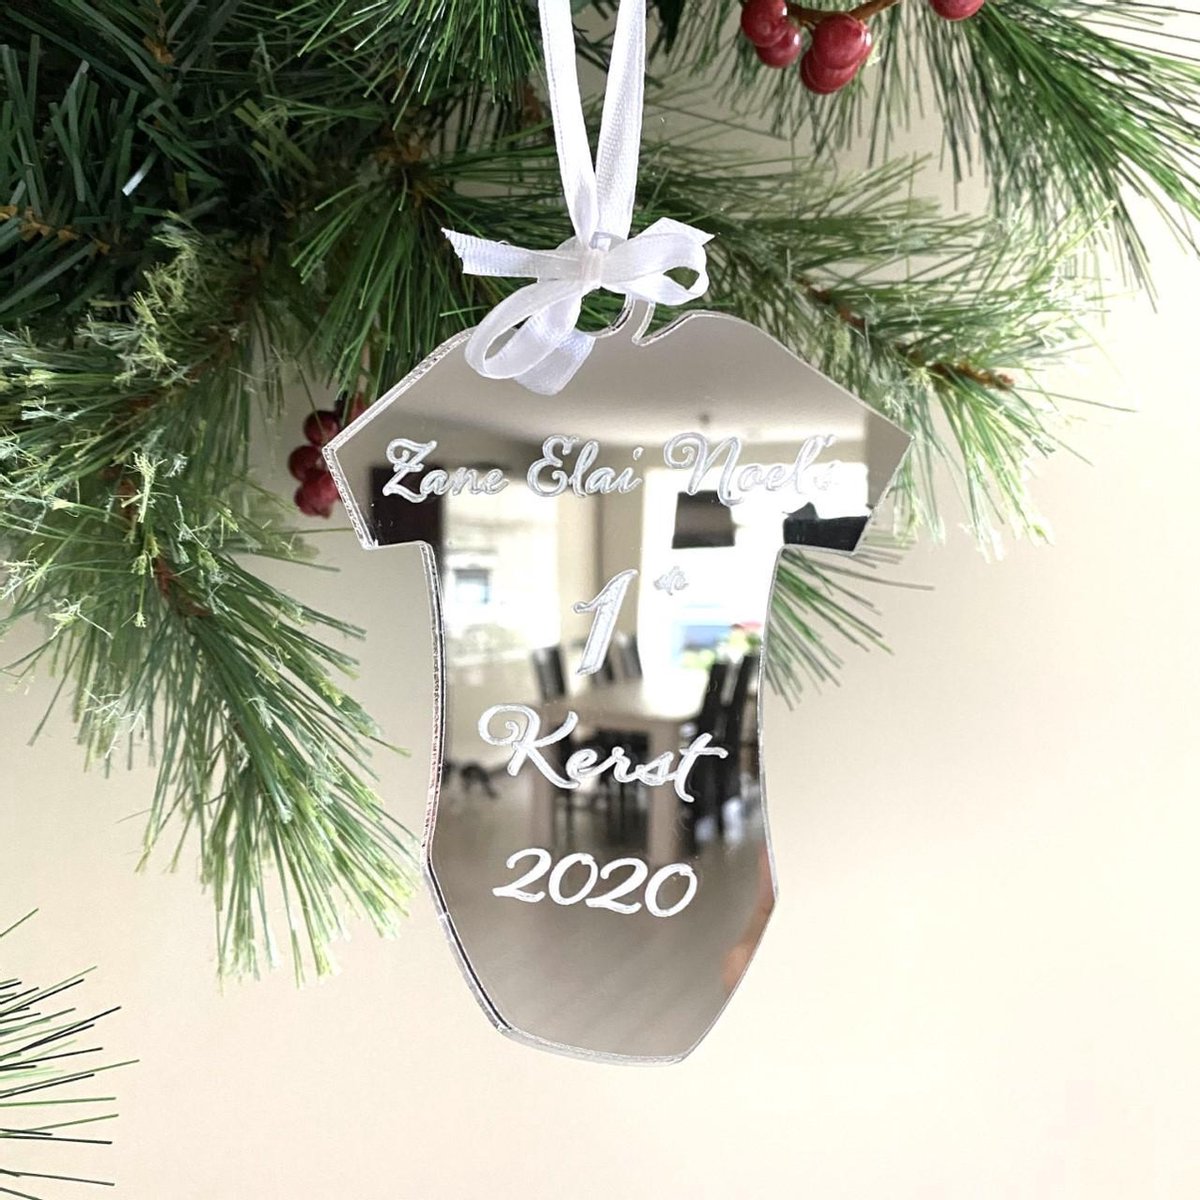 Kerstboom| Kerst| Kerstbal| kersthanger| kerstcadeau| kerstgeschenk| kraamcadeau| rompertje| gepersonaliseerd| hxb 12x9 cm| acryl| plexiglas| zilver spiegel